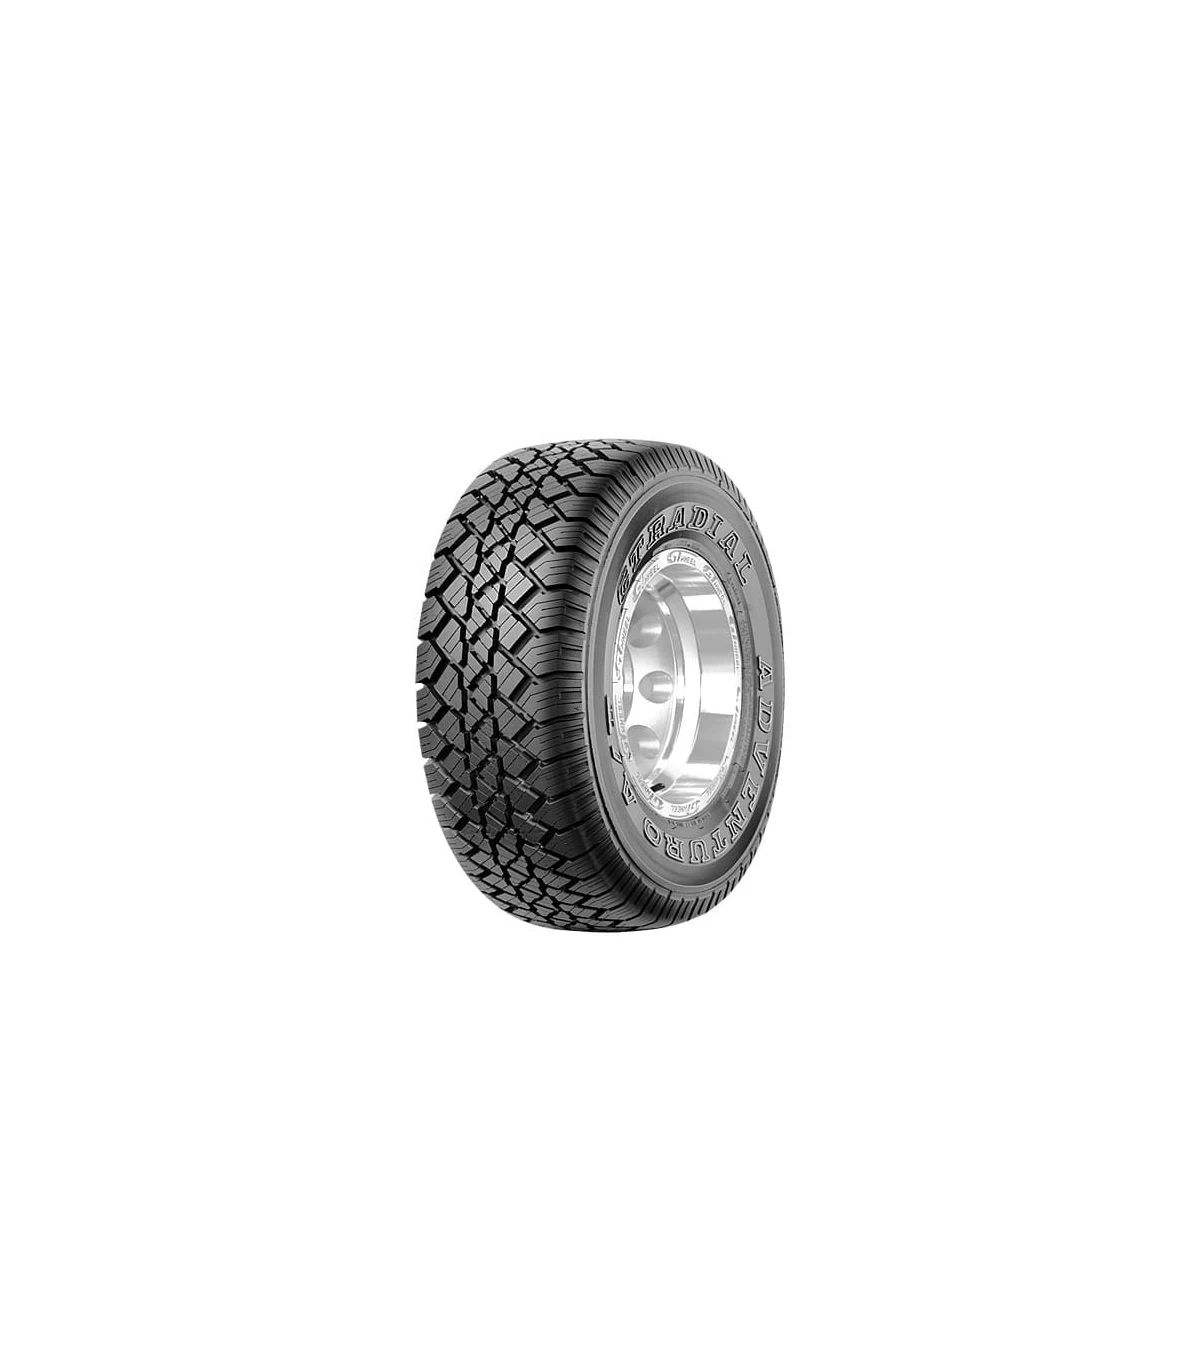 DR Llantas & Neumáticos - San Lorenzo - ✨✨ LLANTAS TRD ARO 16 6x139 ✨✨ ✨  Cubiertas 265/75R16 MT GT Radial ✨ ✨✨Contado y Crédito ✨✨ ✓0985868176  ✓0985140150 ✓0984219487